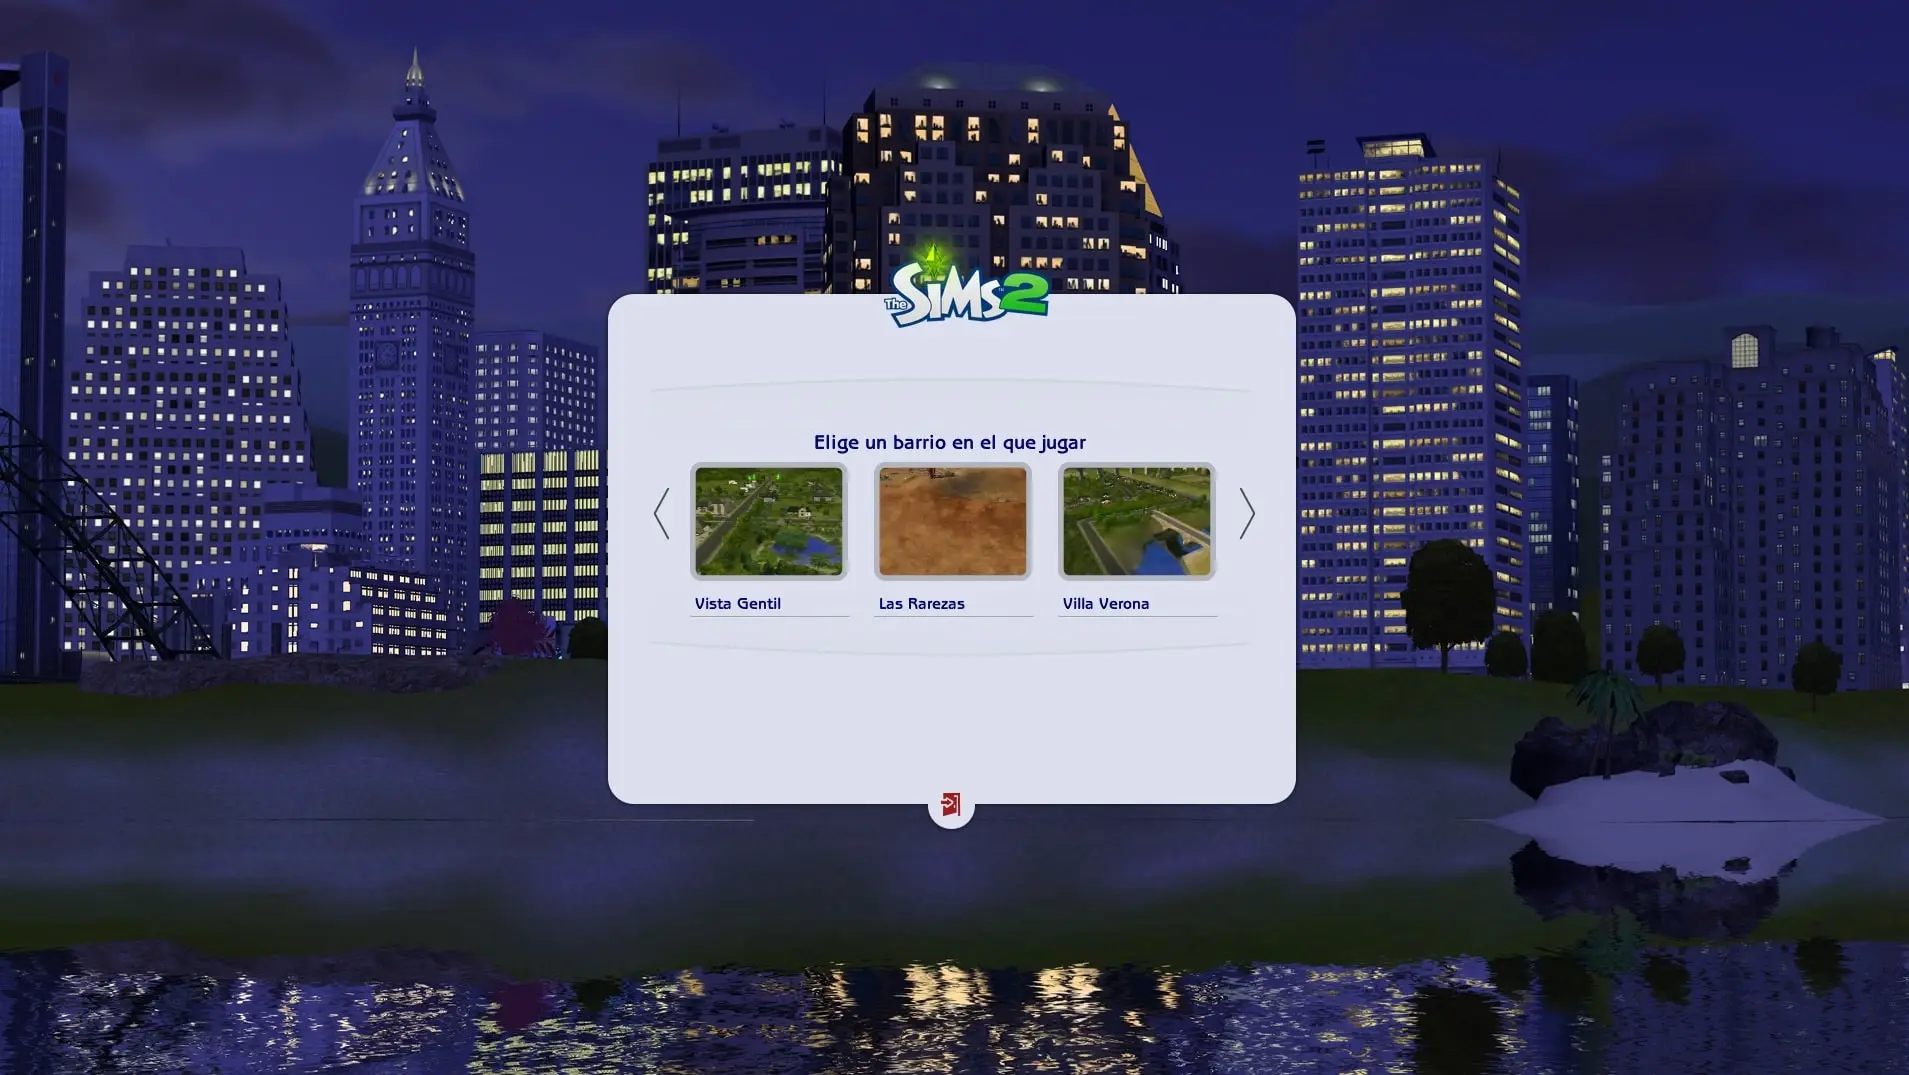 Mod Clean UI en la pantalla de barrios de Los Sims 2.